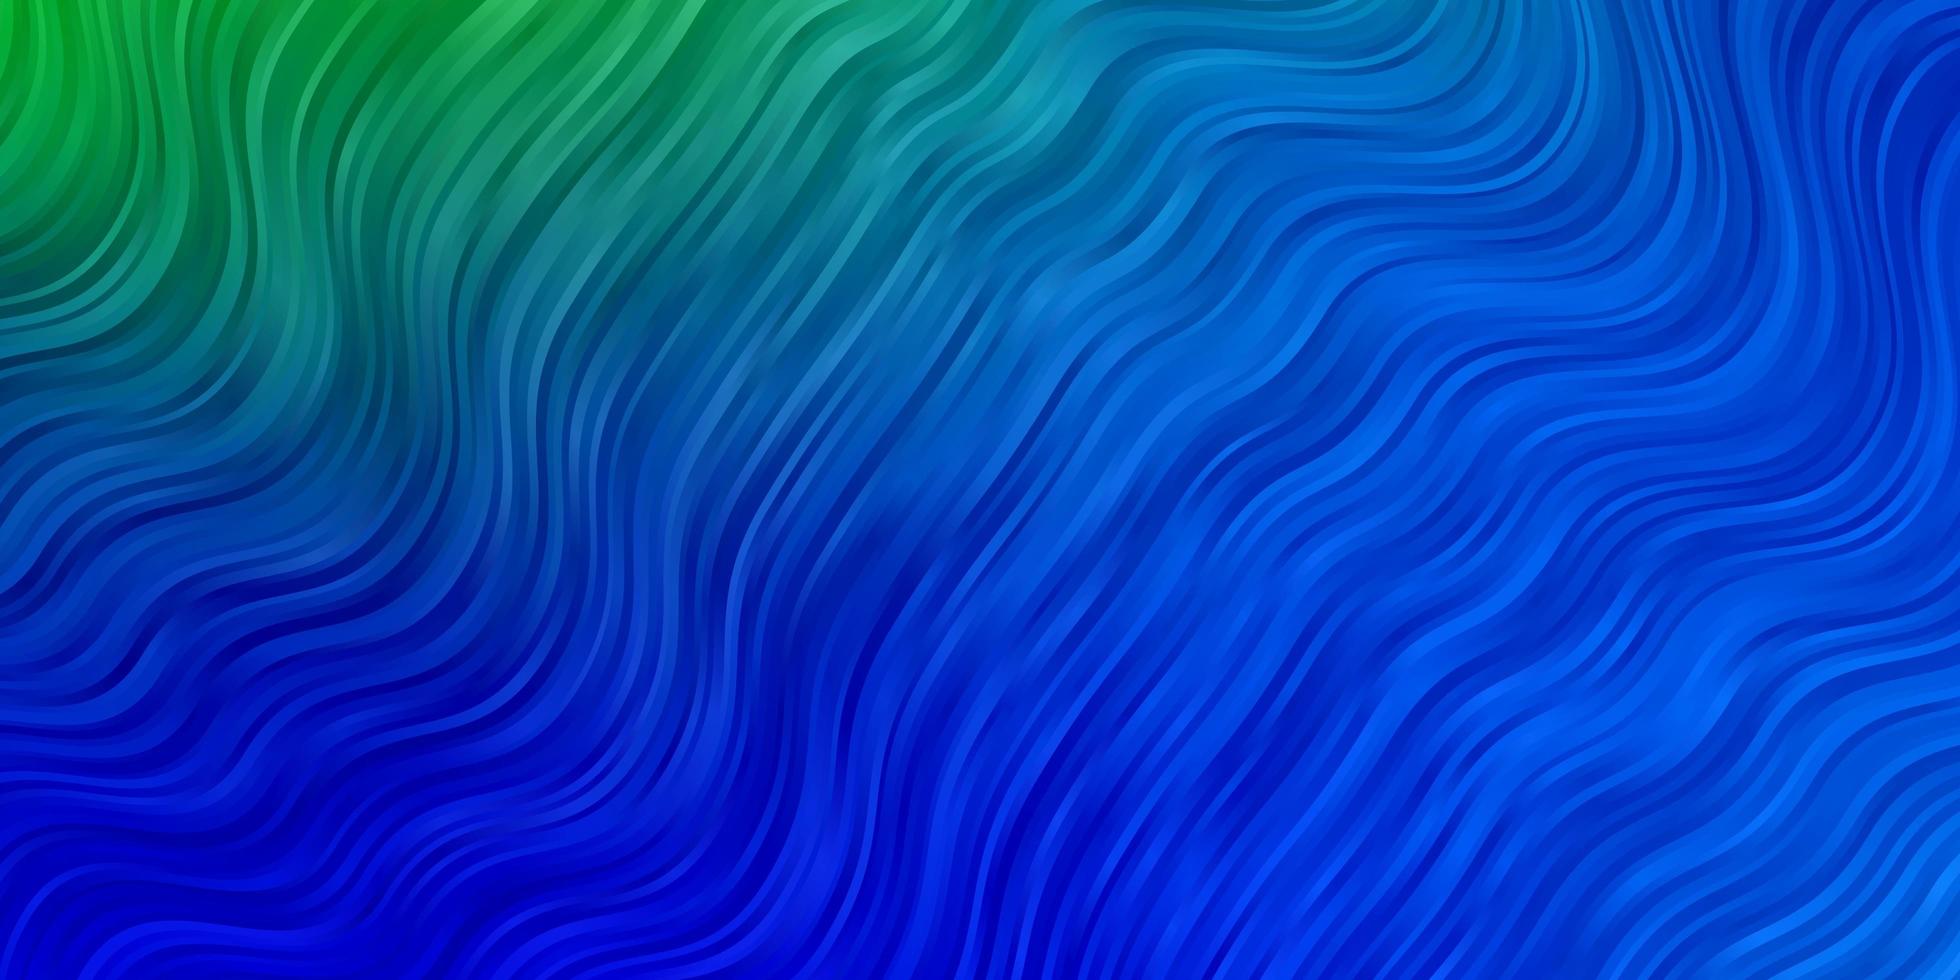 hellblauer, grüner Vektorhintergrund mit trockenen Linien. vektor